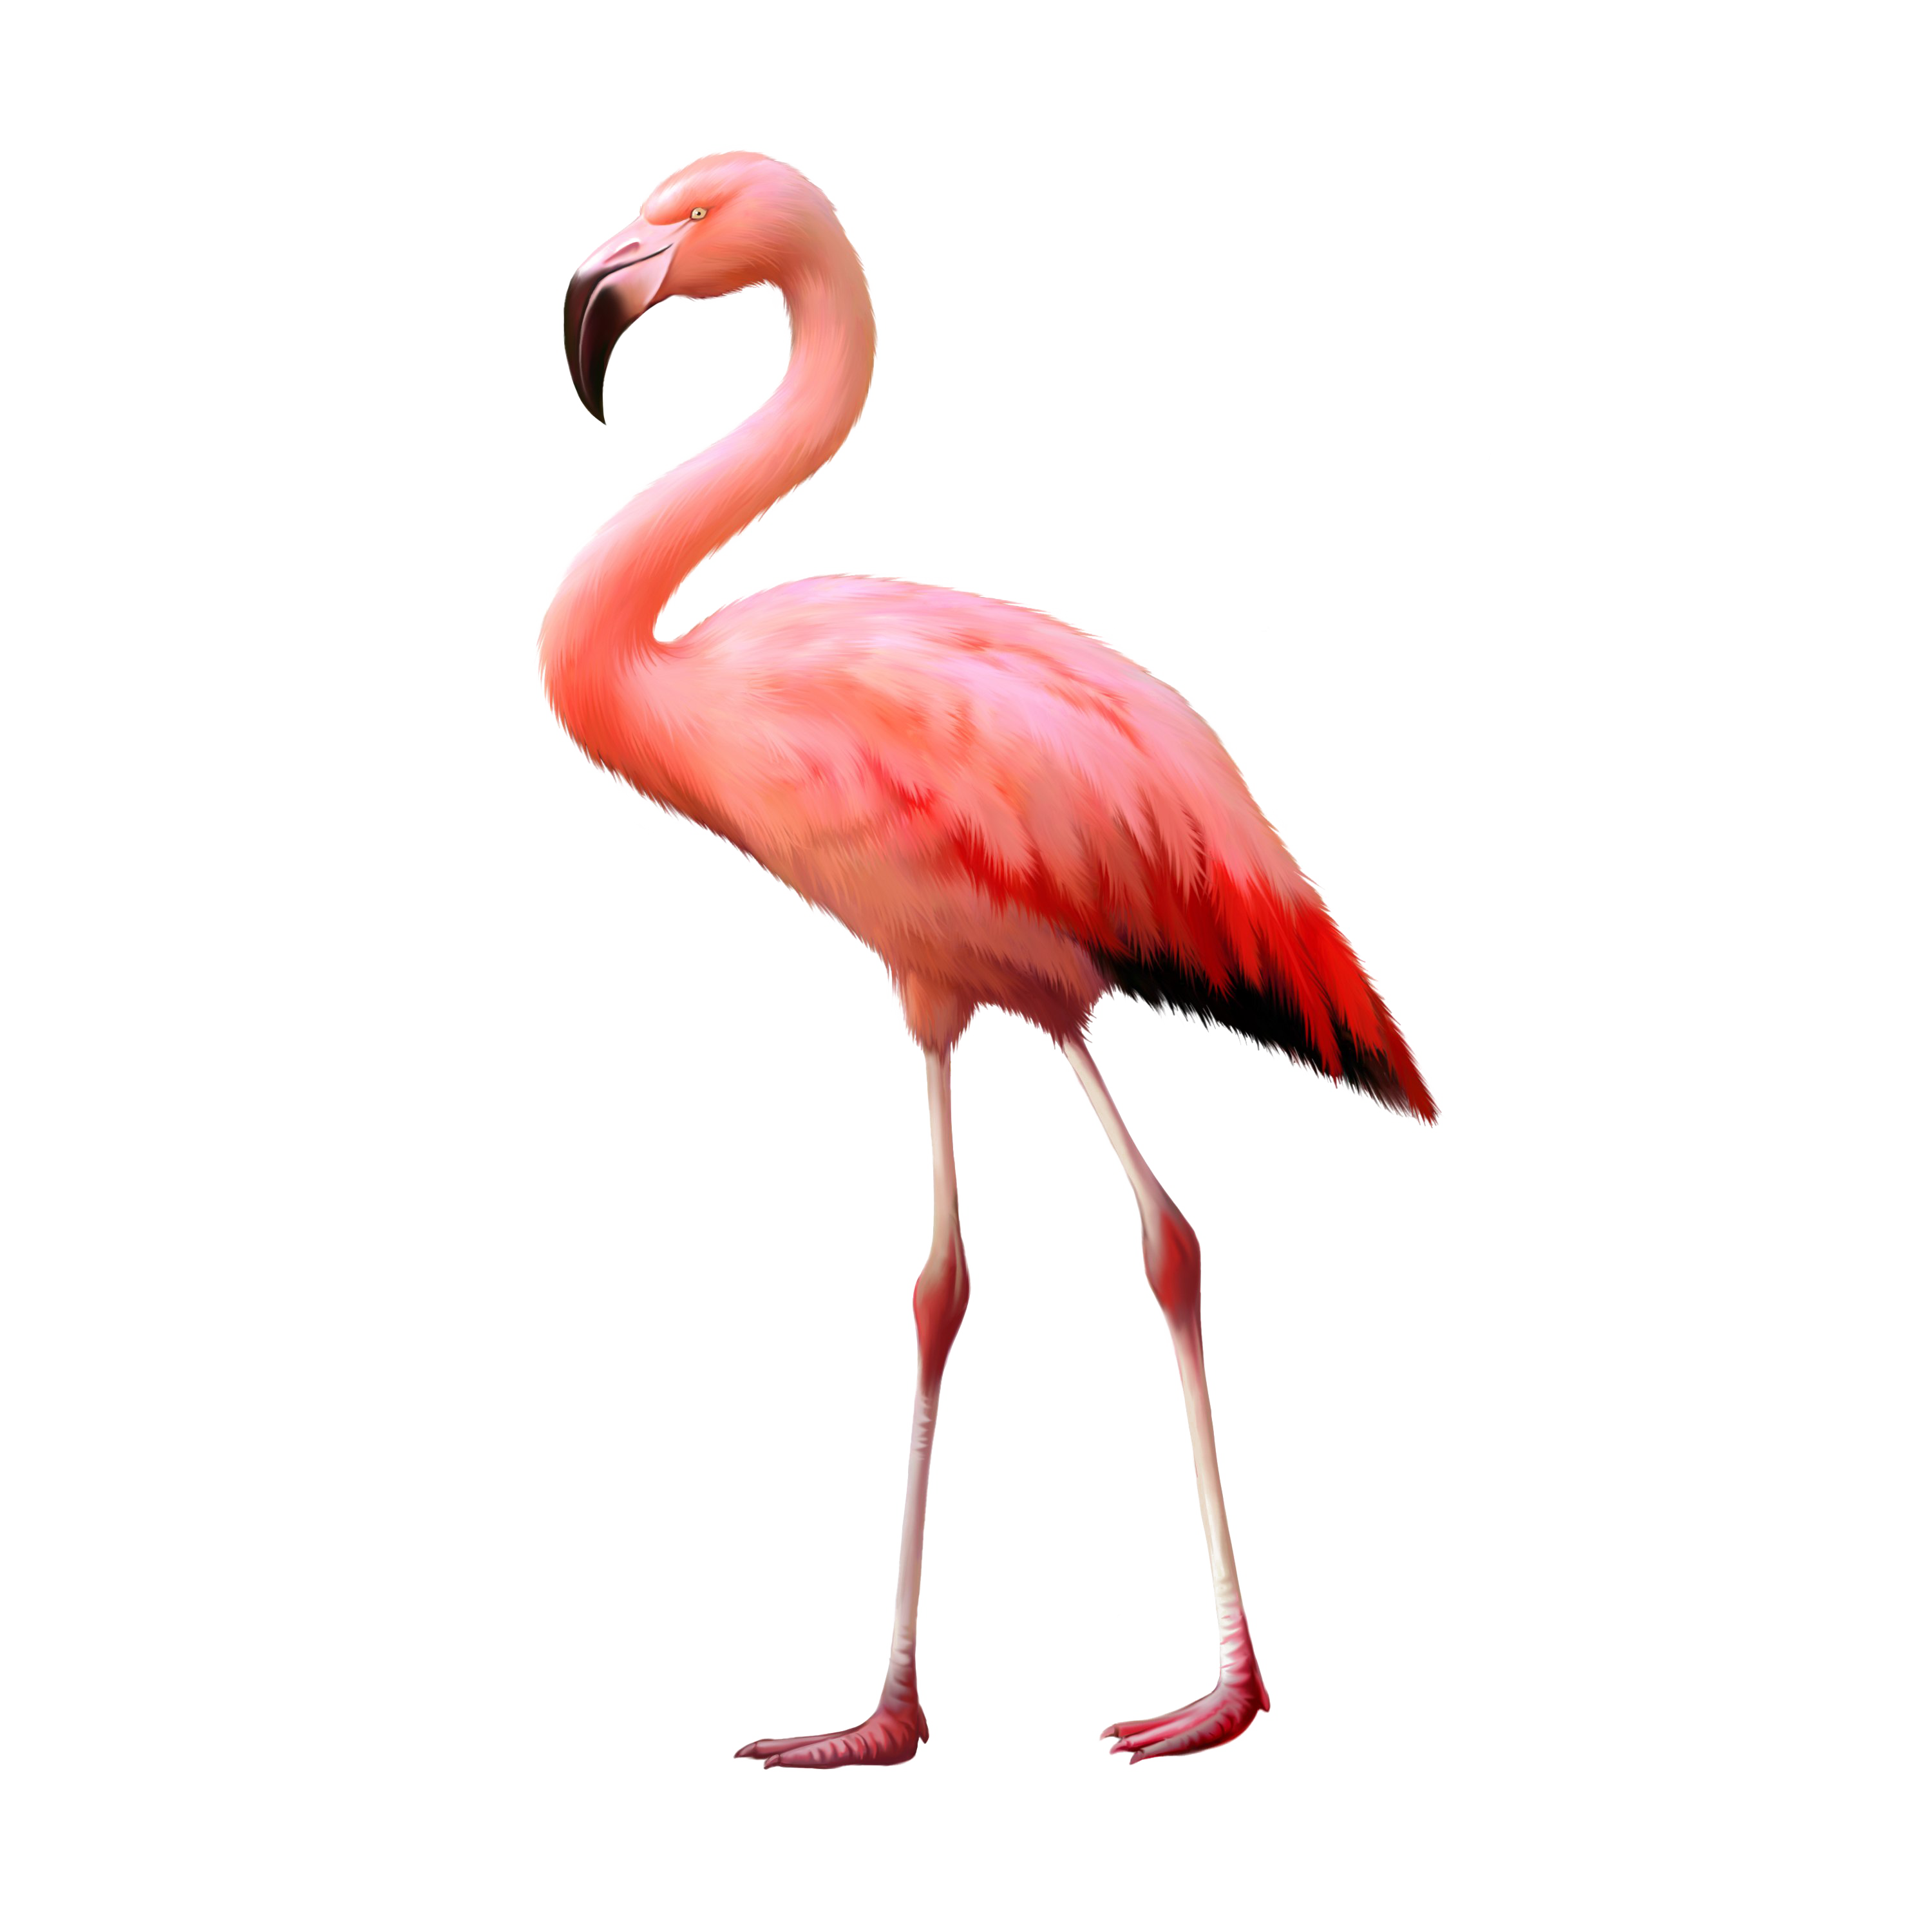 Flamingo PNG Background Image